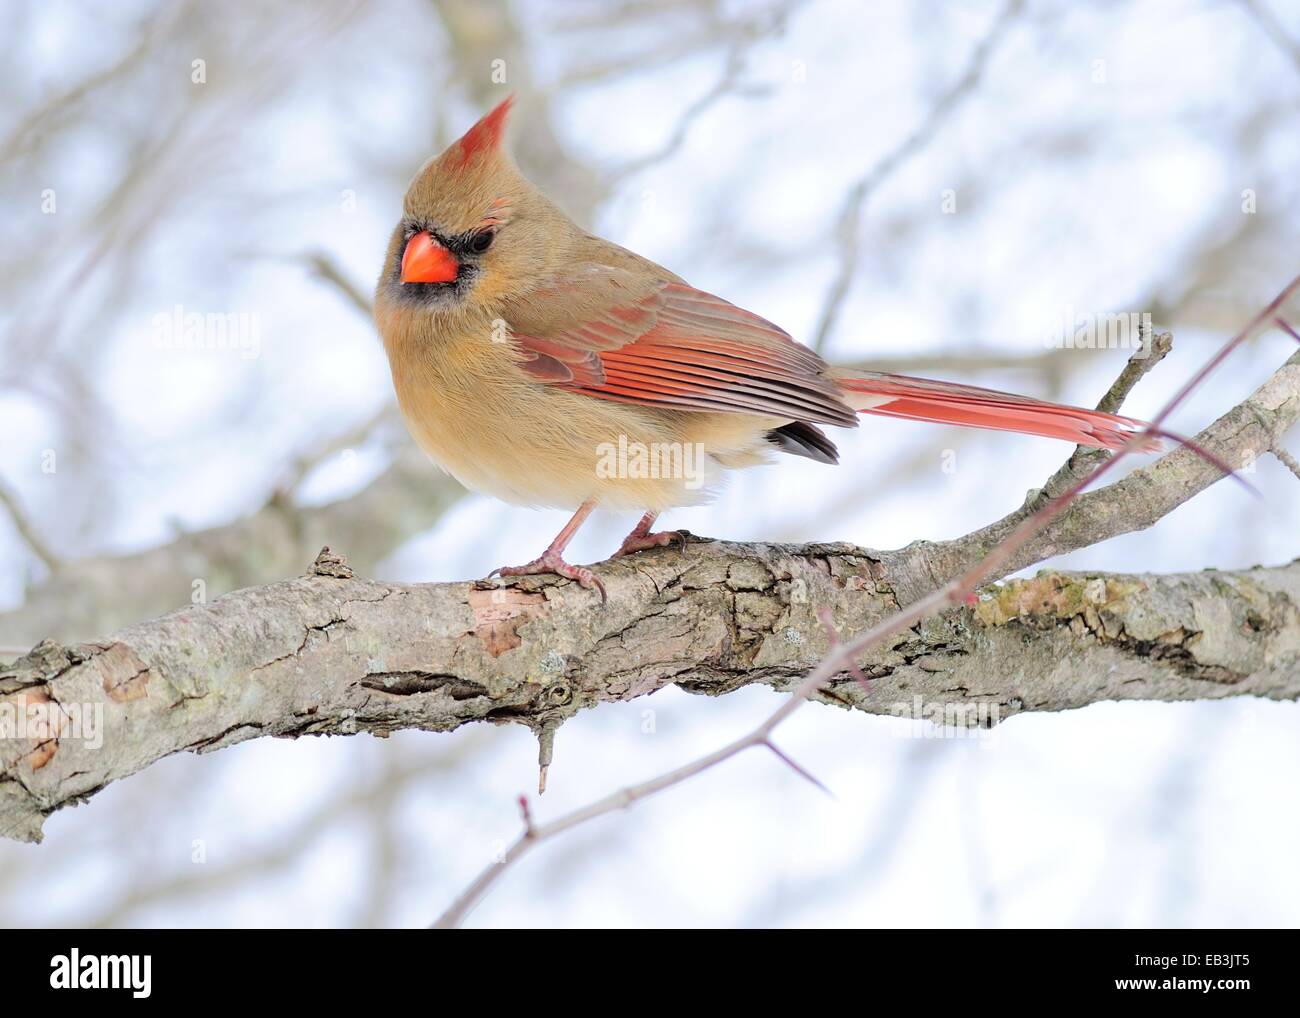 Le Cardinal femelle perchée sur une branche d'arbre en hiver. Banque D'Images